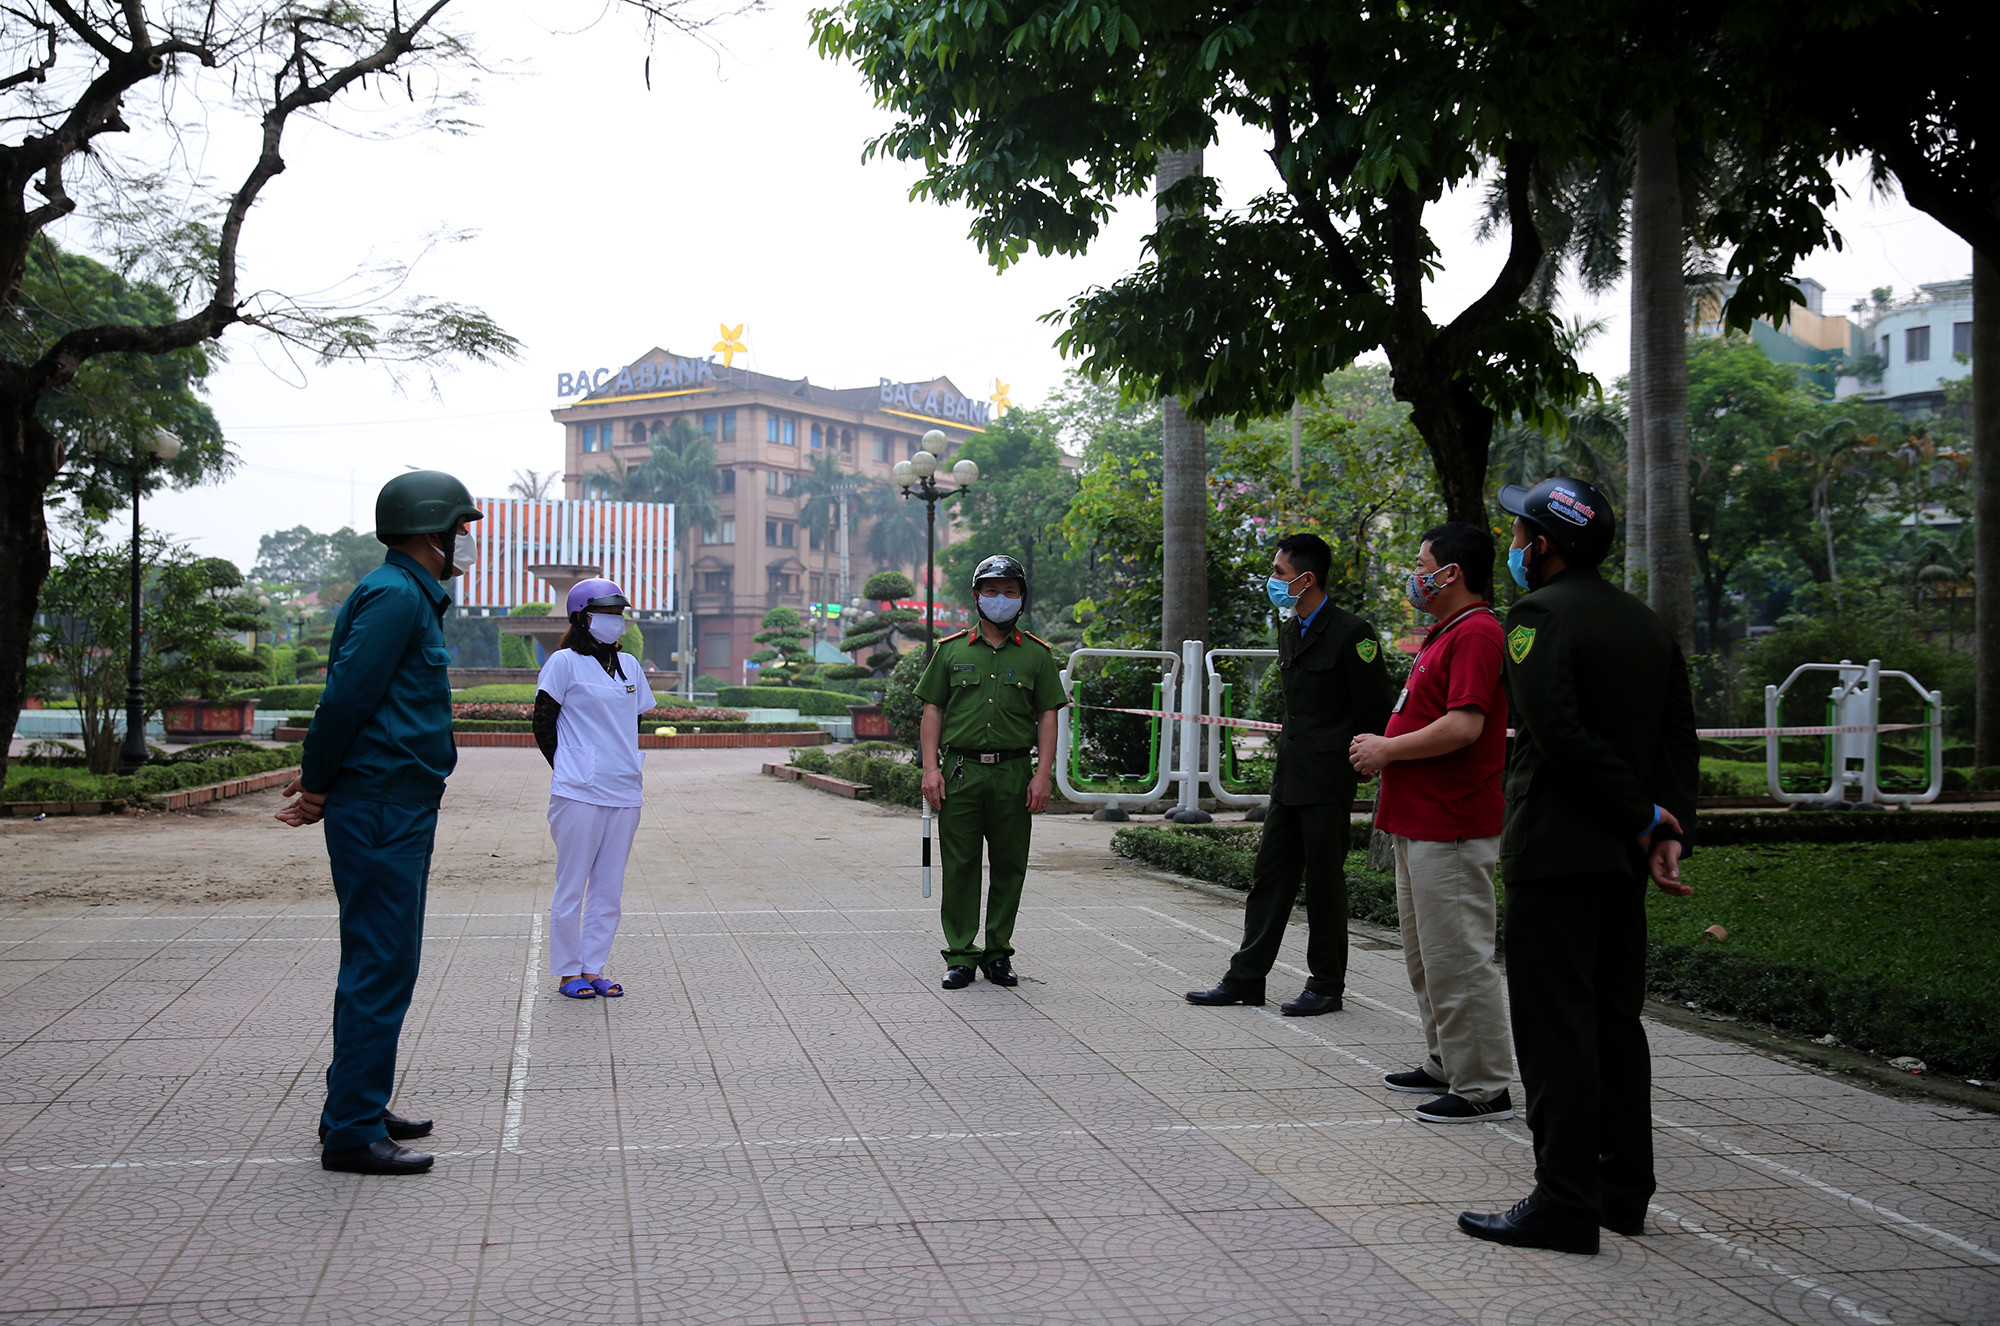 Ngày hôm nay, lực lượng chức năng các phường, xã ở thành phố Vinh tiếp tục làm nhiệm vụ tuyên truyền, vận động và nhắc nhở người dân thực hiện Chỉ thị 16 của Thủ tướng Chính phủ